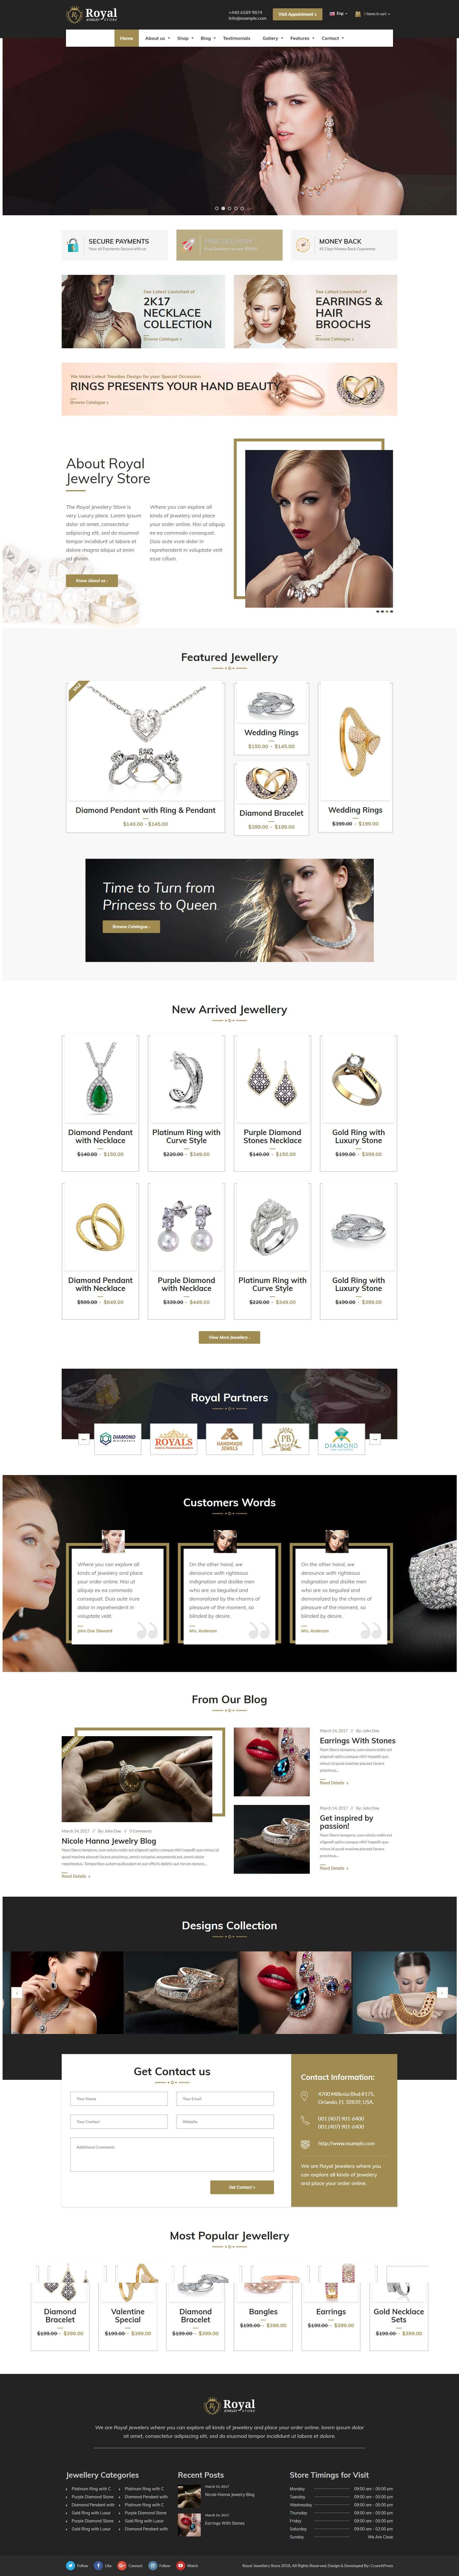 Mẫu website bán hàng dây chuyền, trang sức đẹp